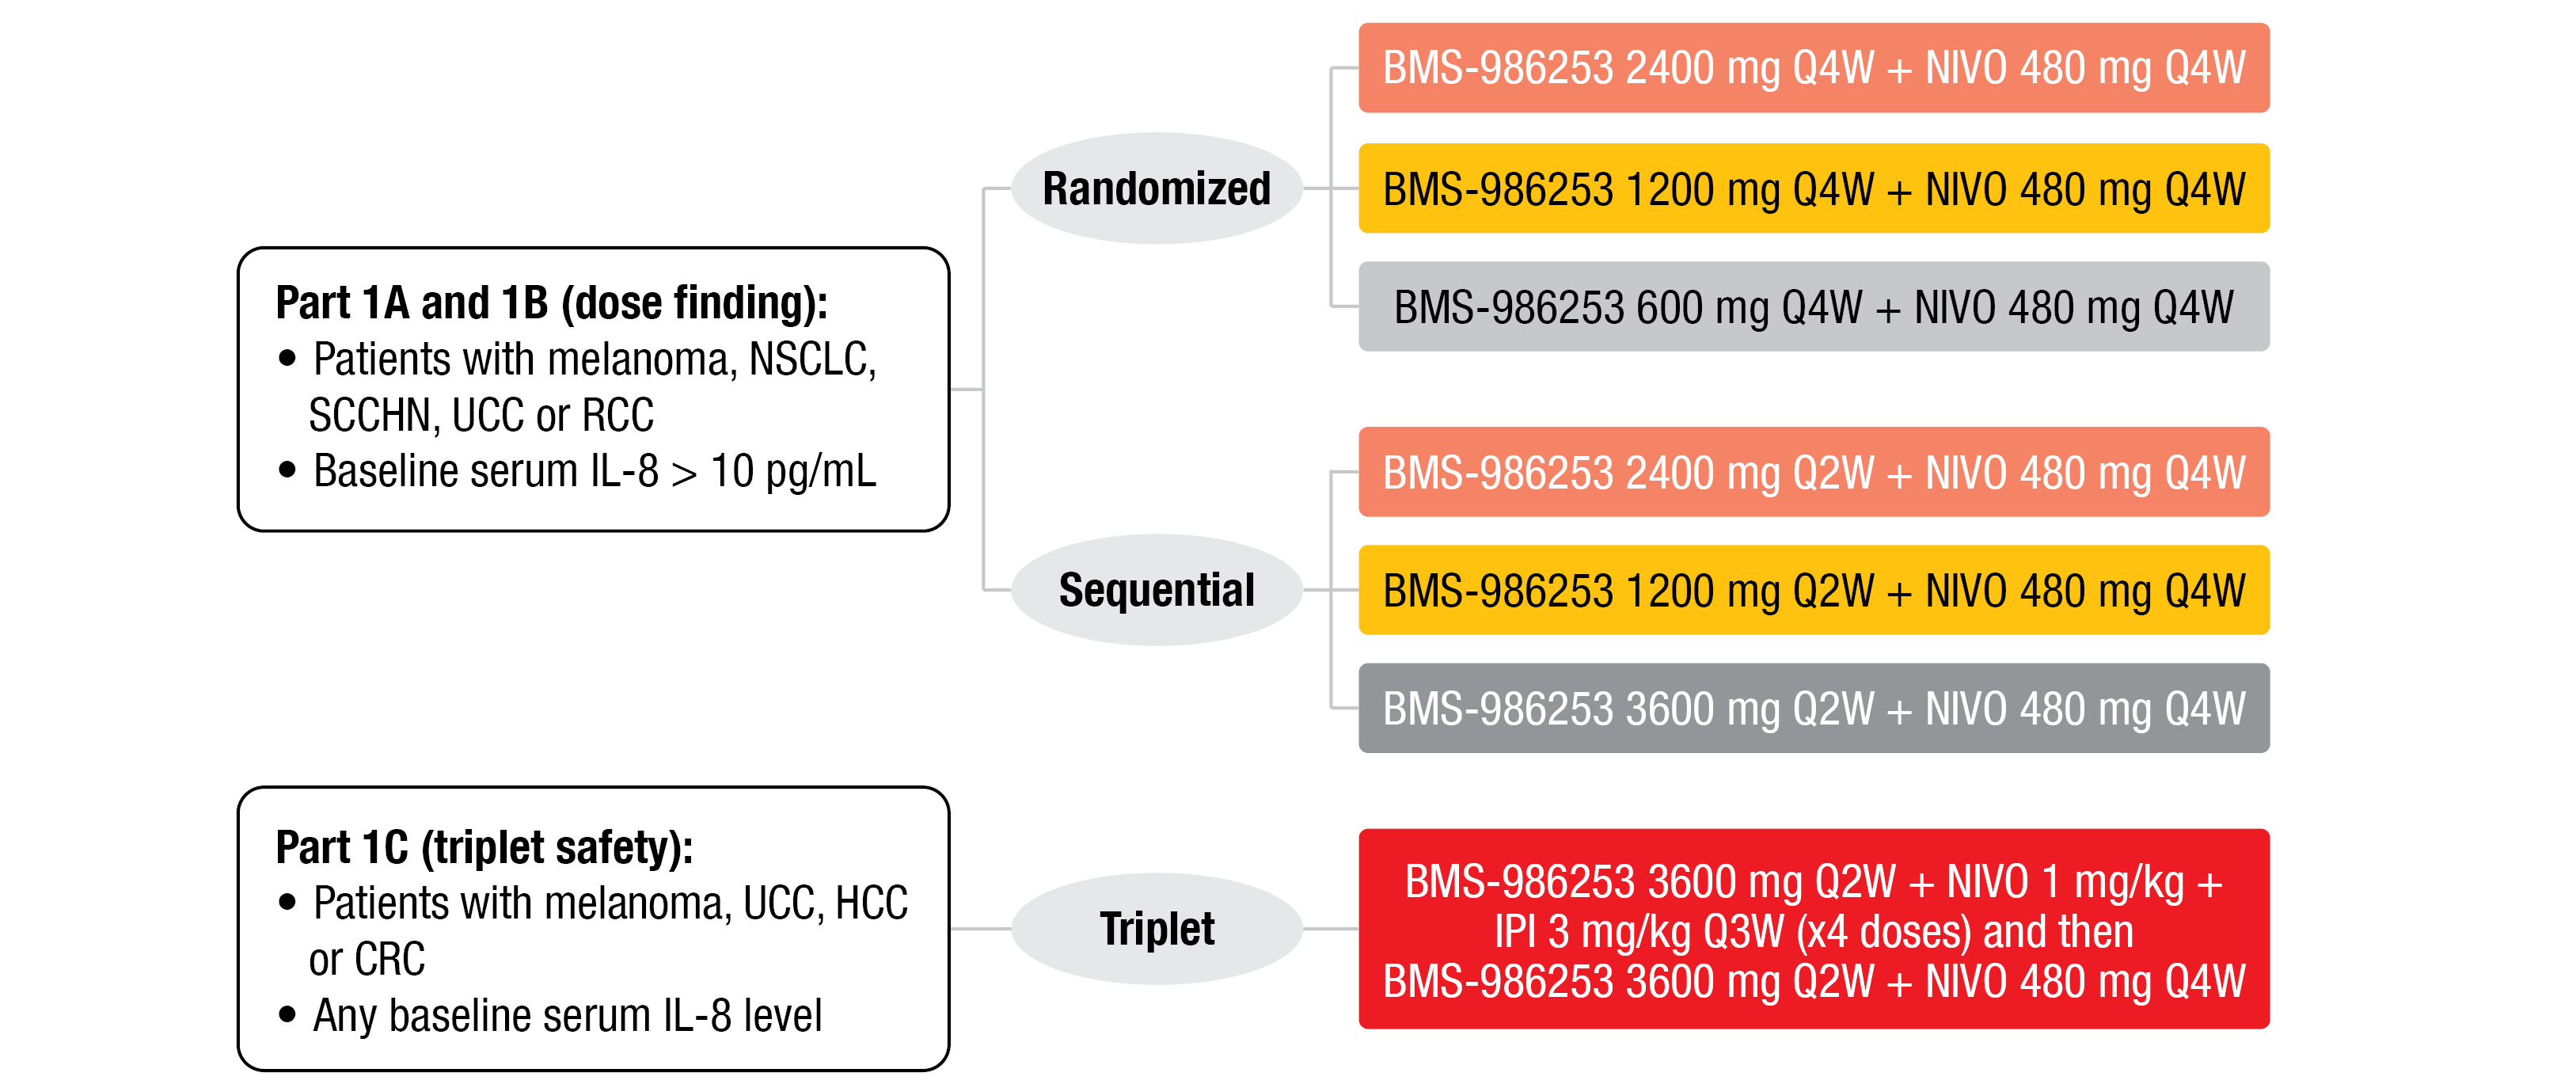 Figure 1: Design of the phase 1 trial evaluating BMS-986253 safety evaluation and dose exploration. IPI, ipilimumab; NIVO, nivolumab